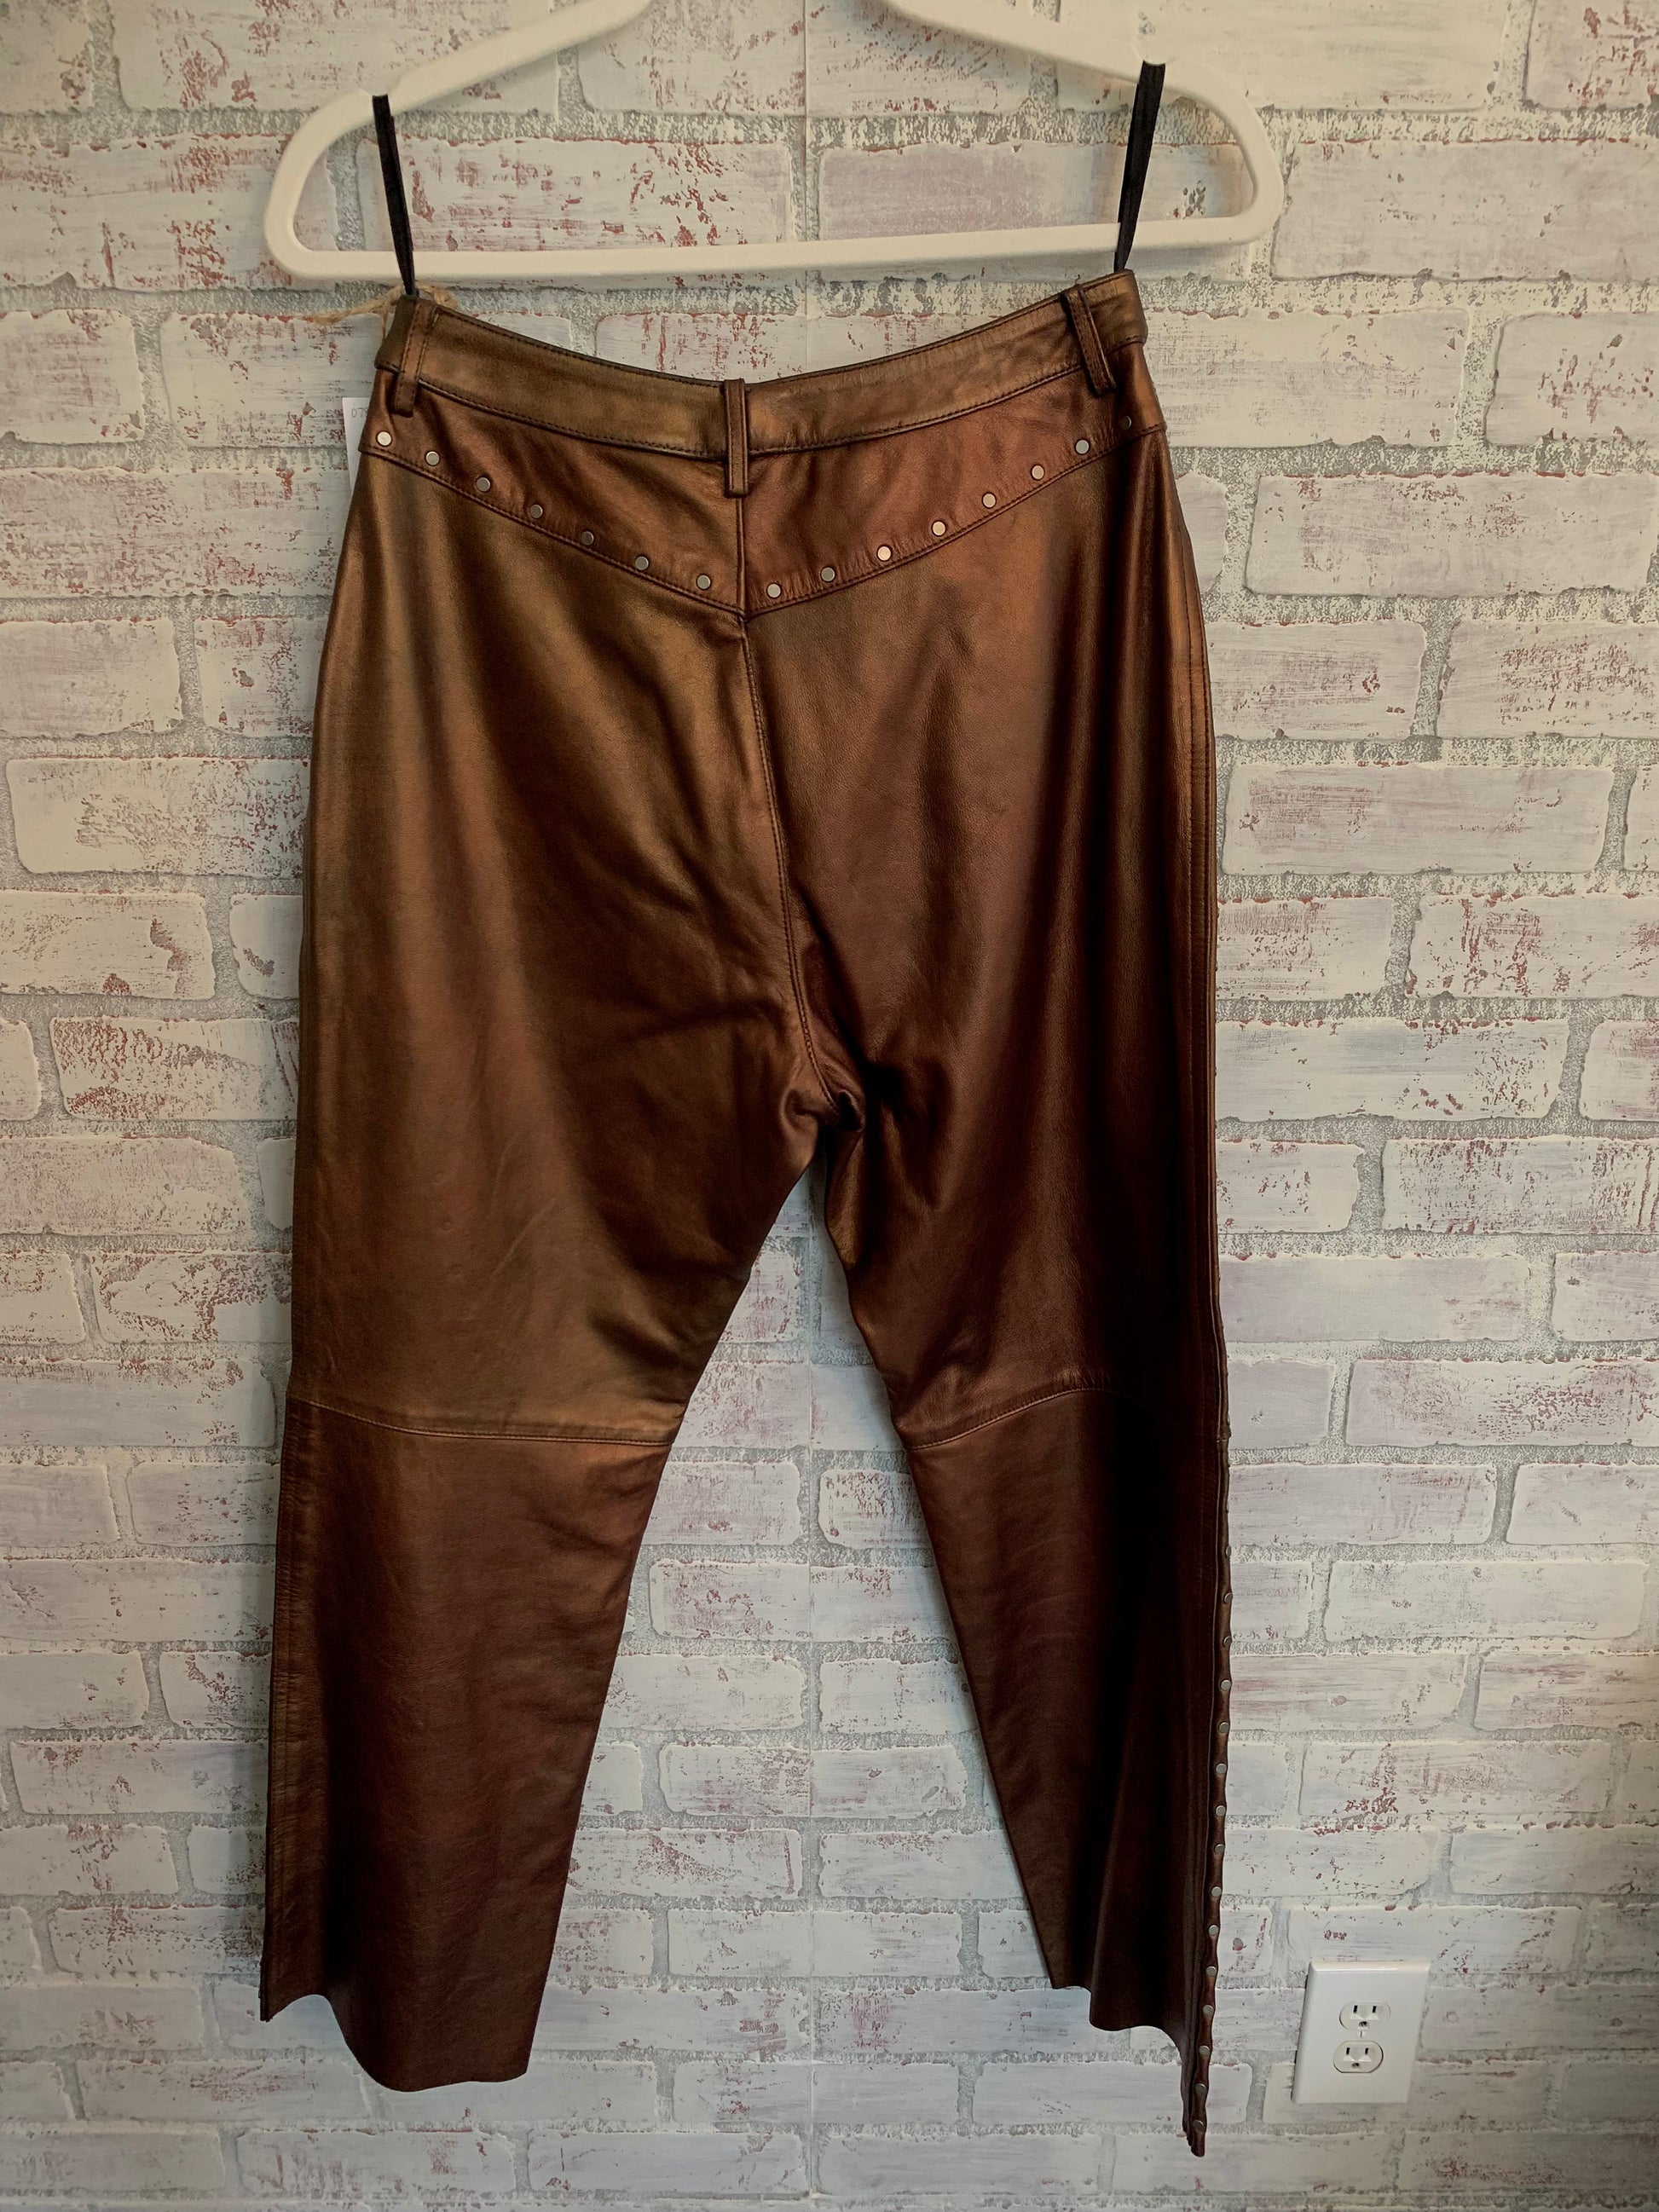 Vintage Harley Davidson Bronze Leather Pants – to la mer vintage